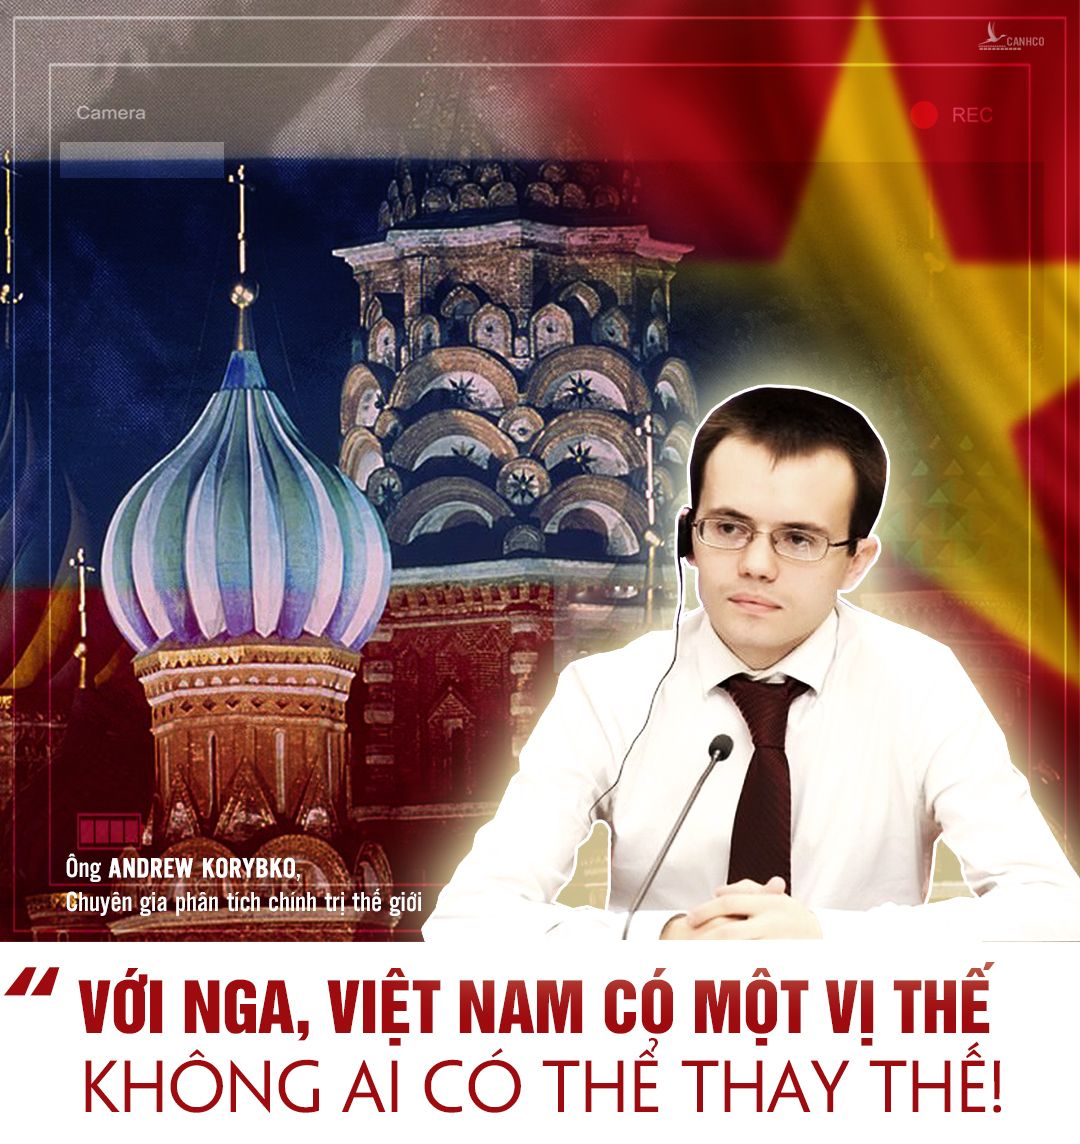 Chuyên gia: Với Nga, Việt Nam có một vị thế không ai có thể thay thế